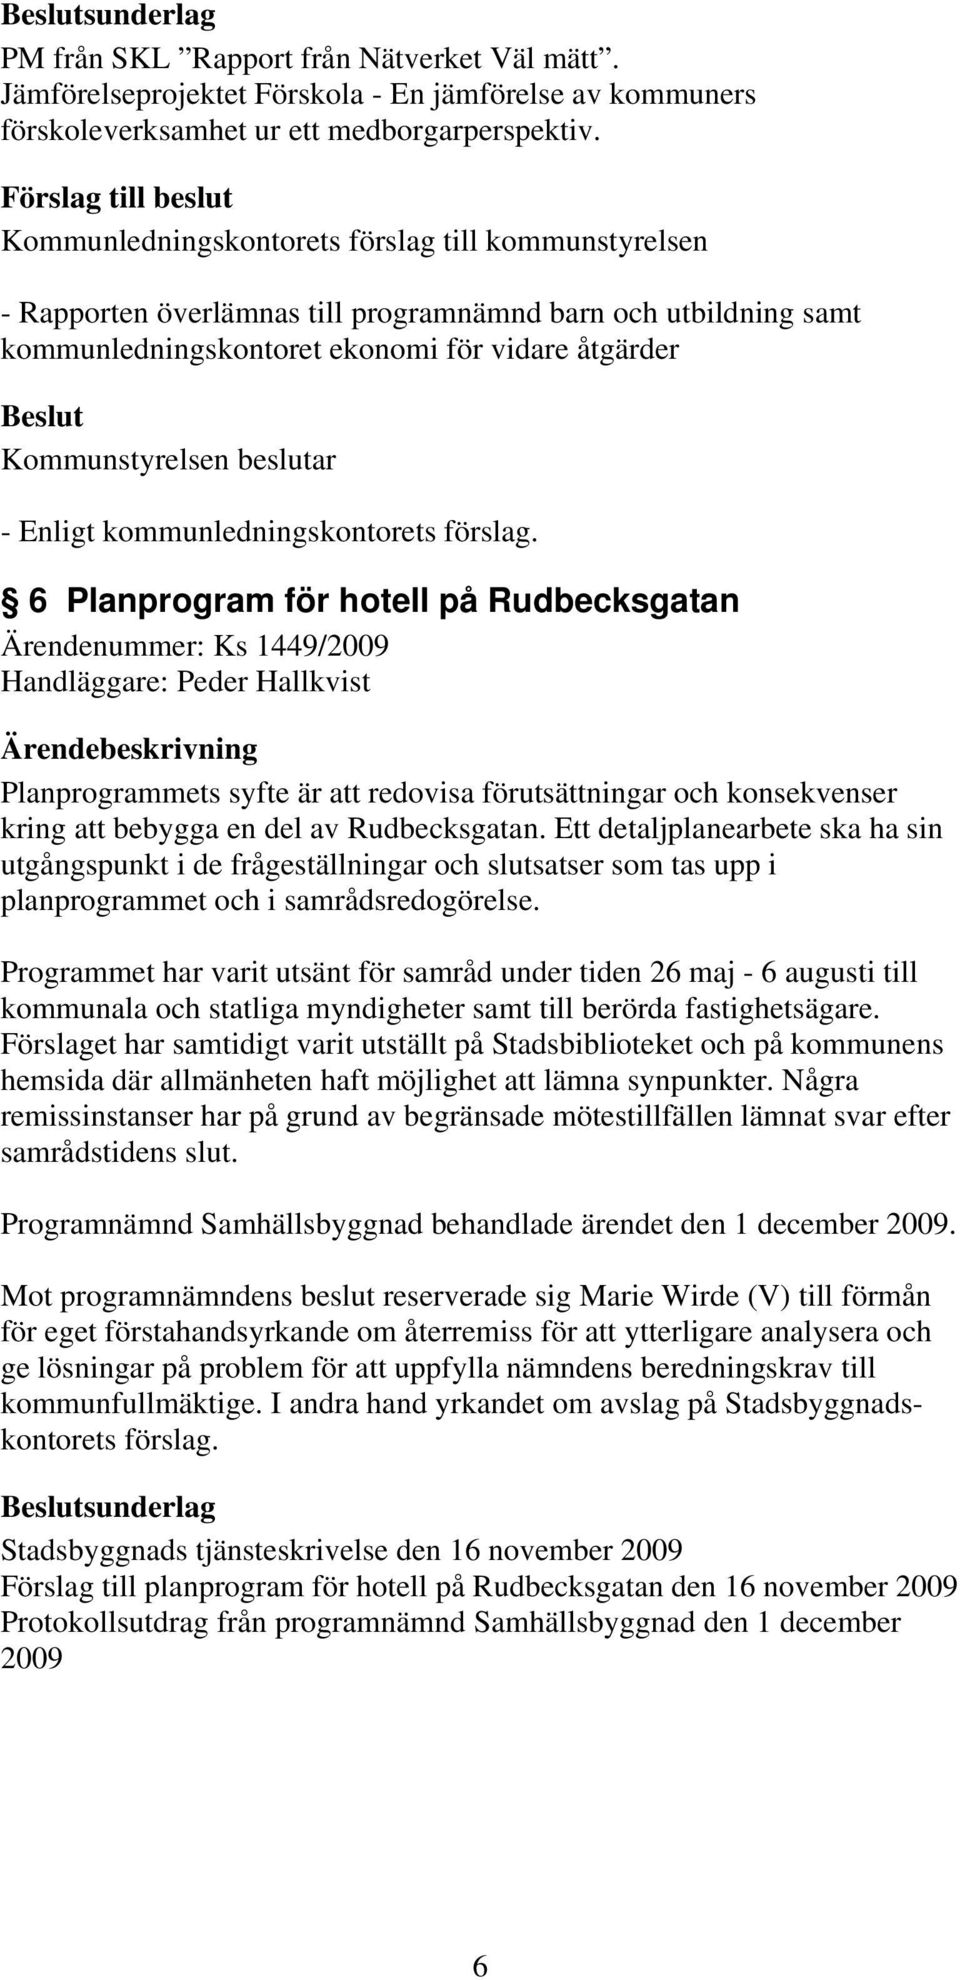 Peder Hallkvist Planprogrammets syfte är att redovisa förutsättningar och konsekvenser kring att bebygga en del av Rudbecksgatan.